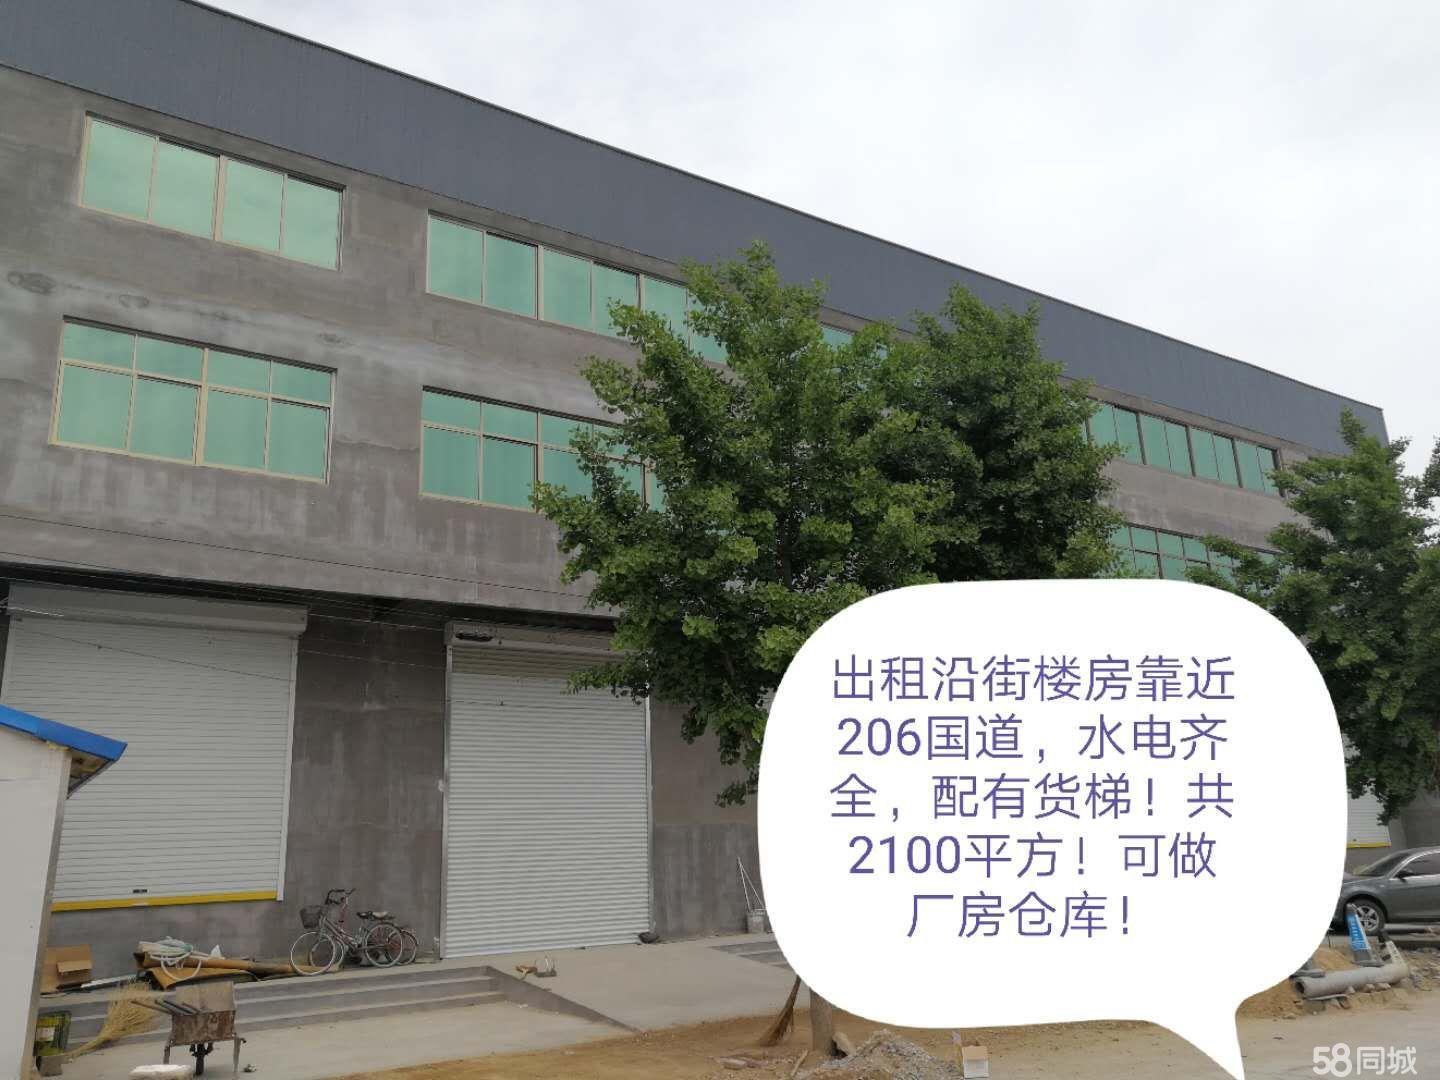 (出租) 刘管庄镇靠近206国道 厂房 2100平米